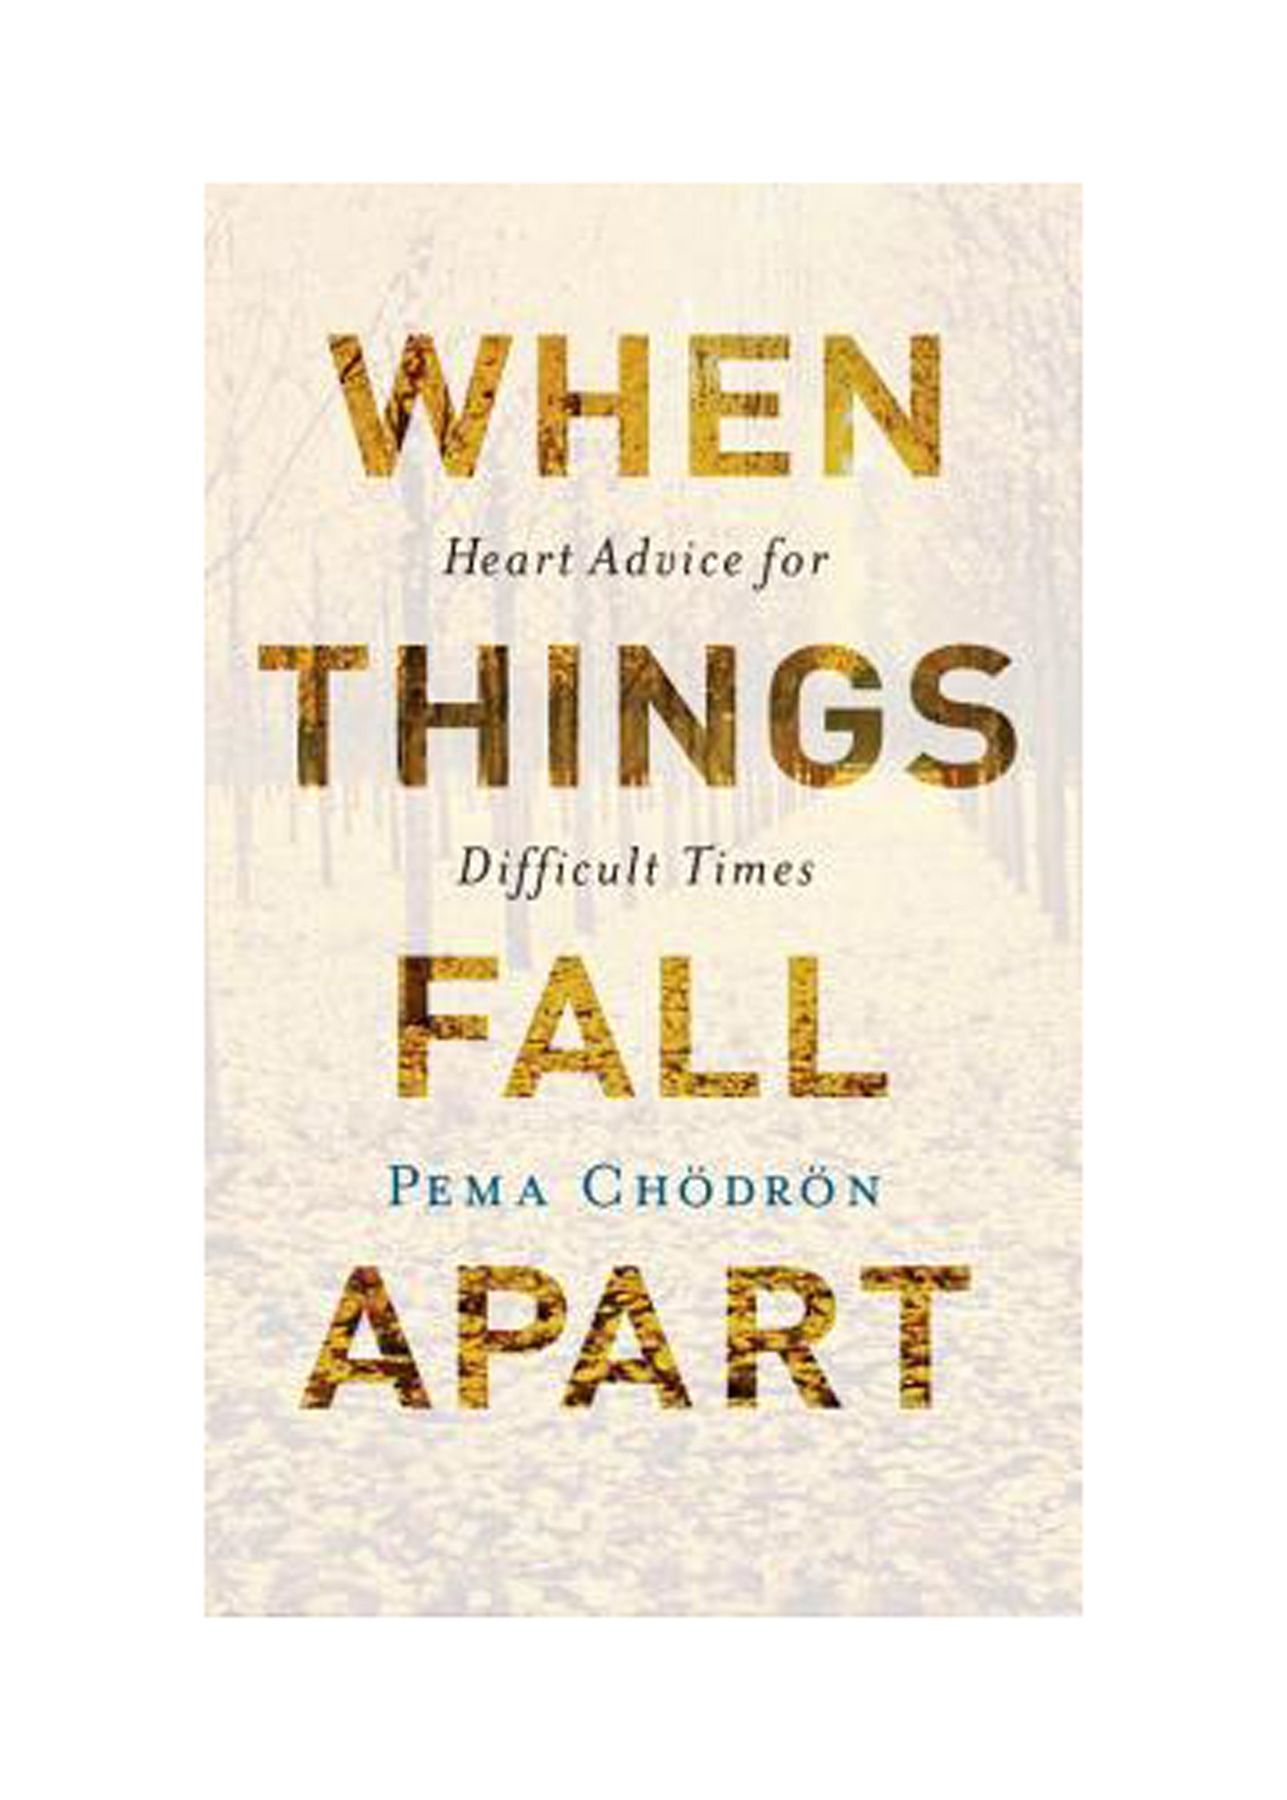 Grāmatas šķiršanās gadījumiem: kad lietas sabrūk: sirds padomi grūtos laikos, Pema Chödrön